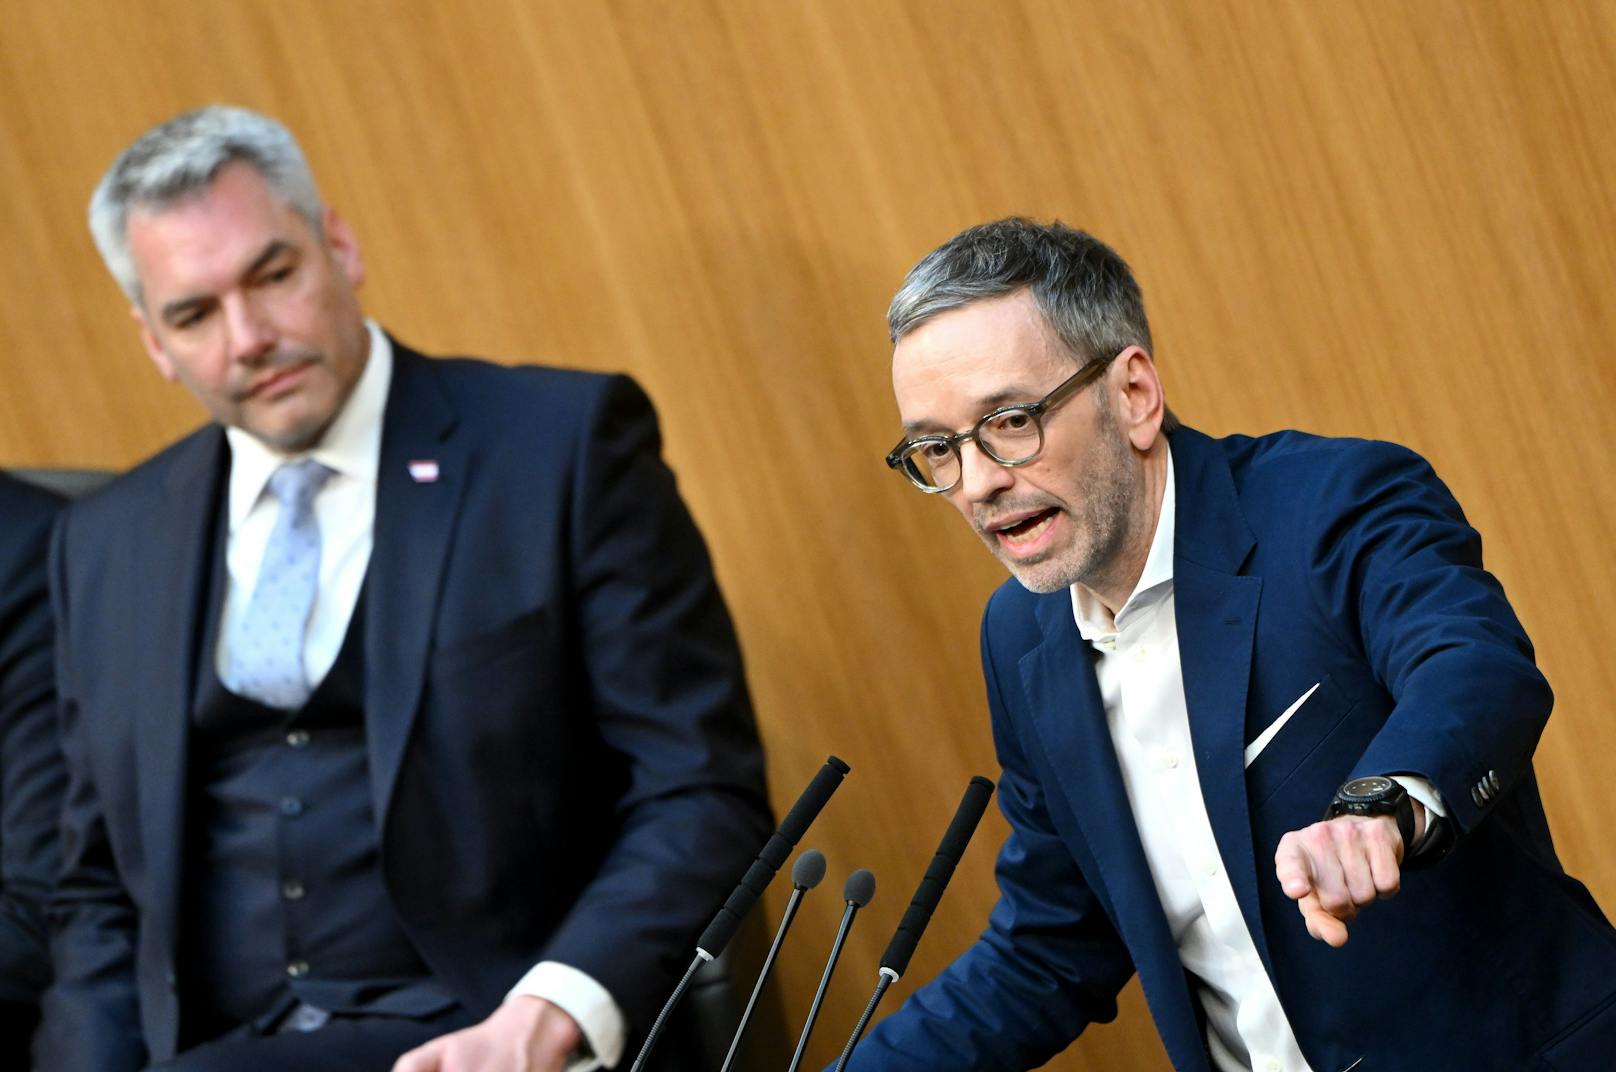 Mehrheit der Österreicher gegen ÖVP-FPÖ-Koalition